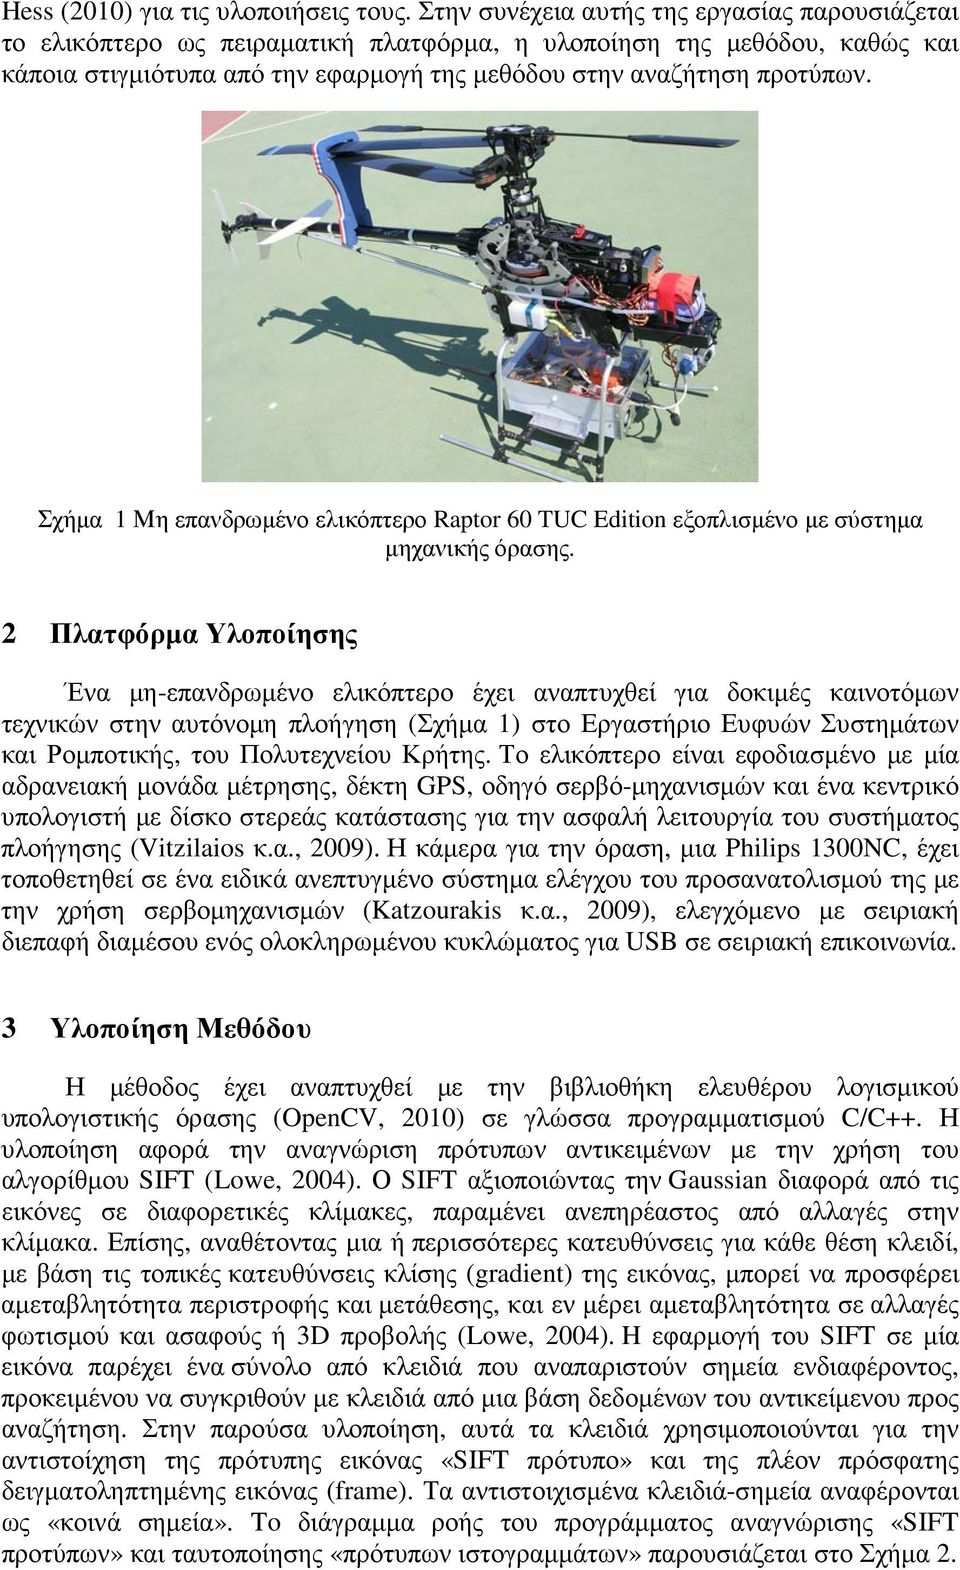 Σχήµα 1 Μη επανδρωµένο ελικόπτερο Raptor 60 TUC Edition εξοπλισµένο µε σύστηµα µηχανικής όρασης.